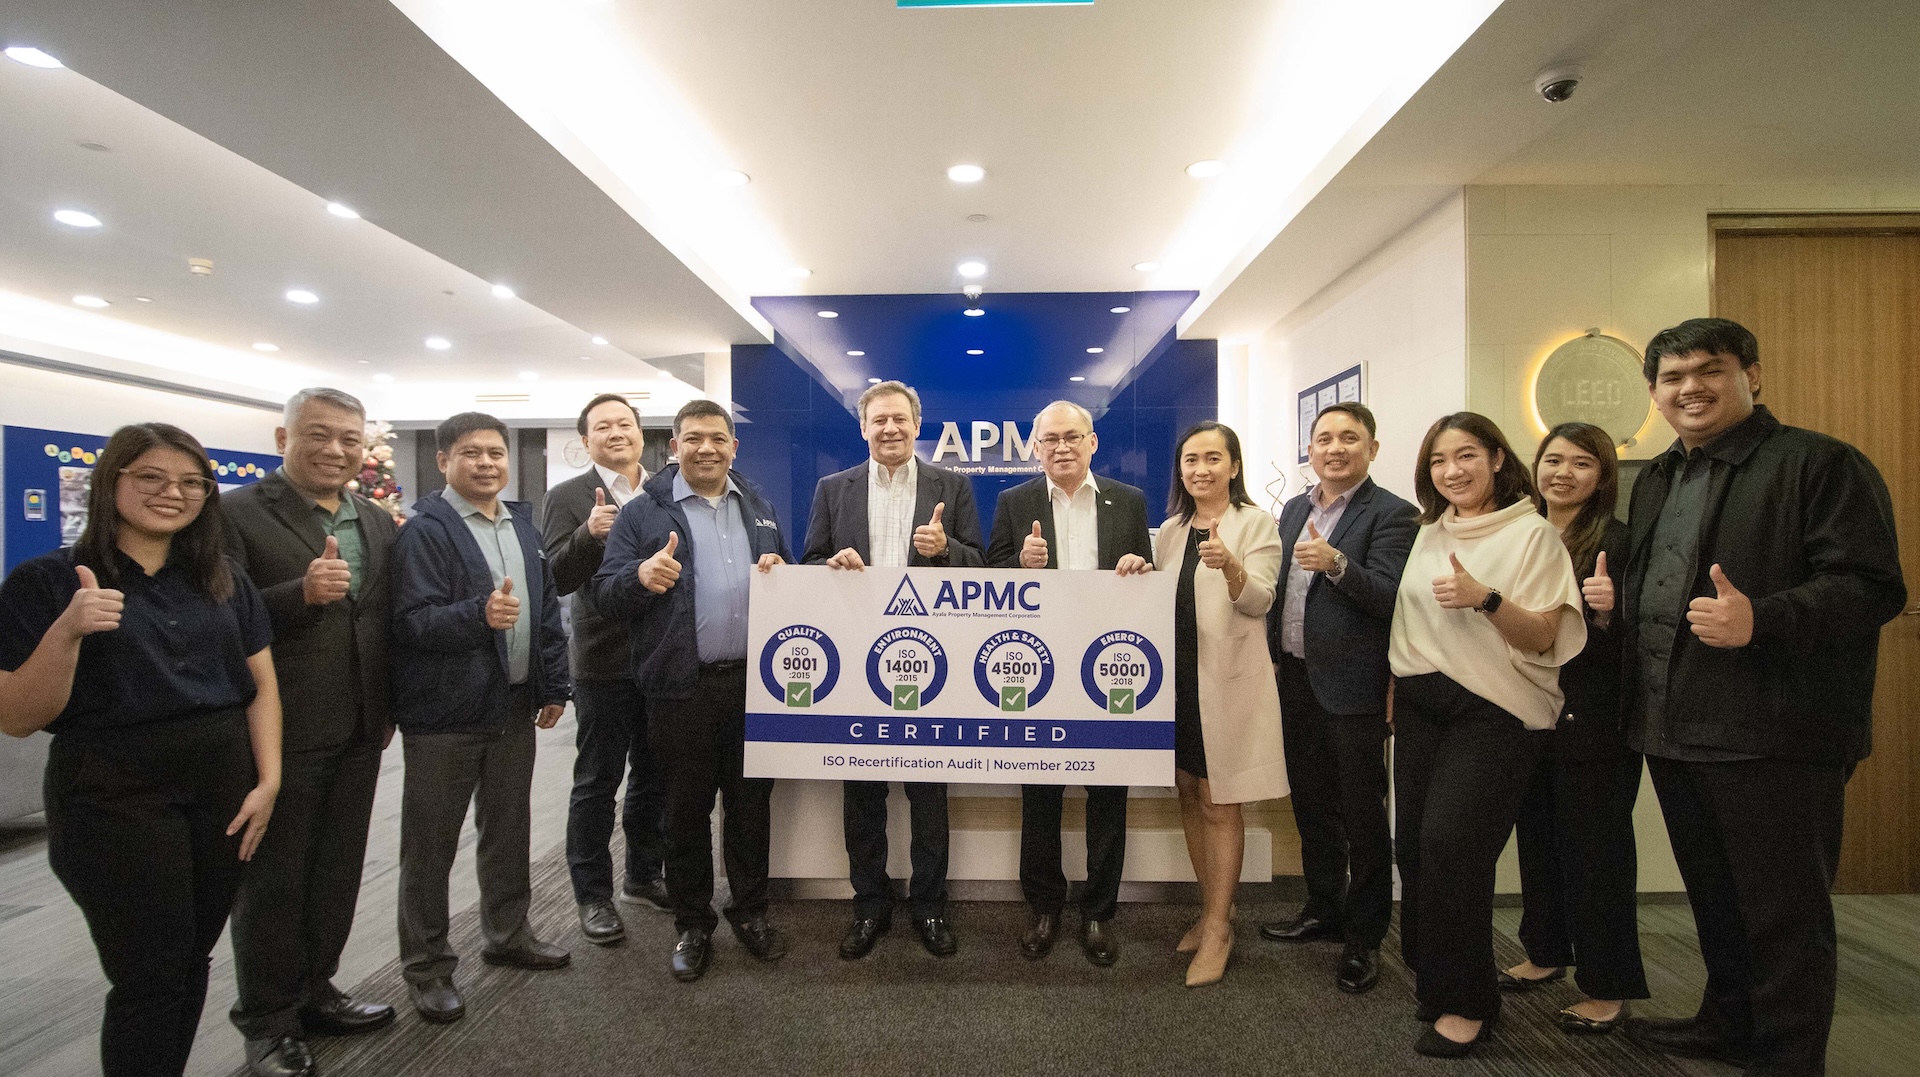 Ayala Property Management Corporation (APMC)